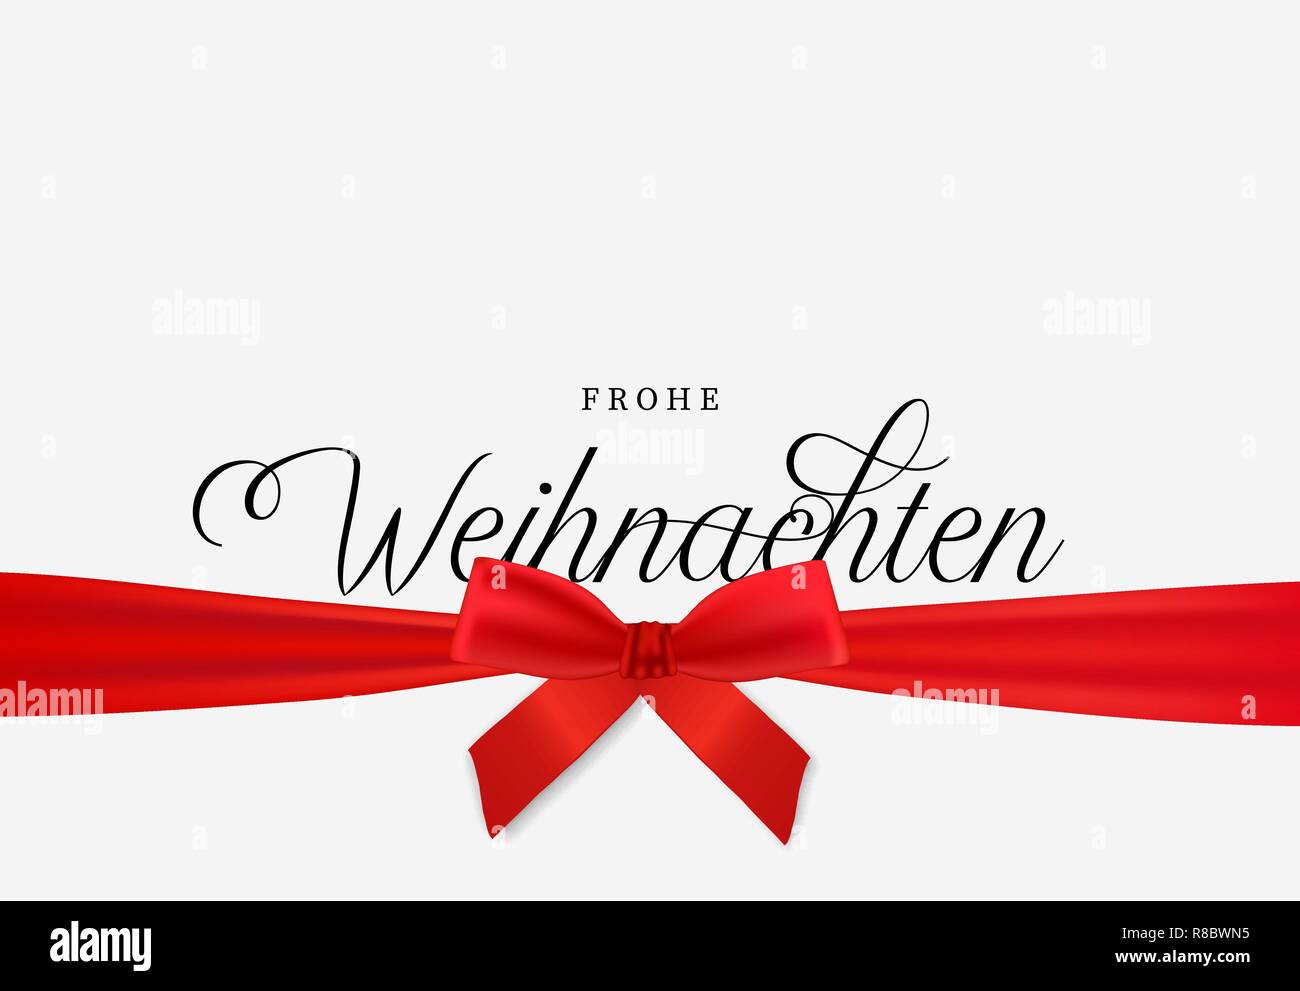 Frohe Weihnachten Karte in deutscher Sprache, realistisch red ribbon auf weißem Hintergrund. Winter Weihnachten Urlaub Design für Party Einladung oder Jahreszeiten g Stock Vektor